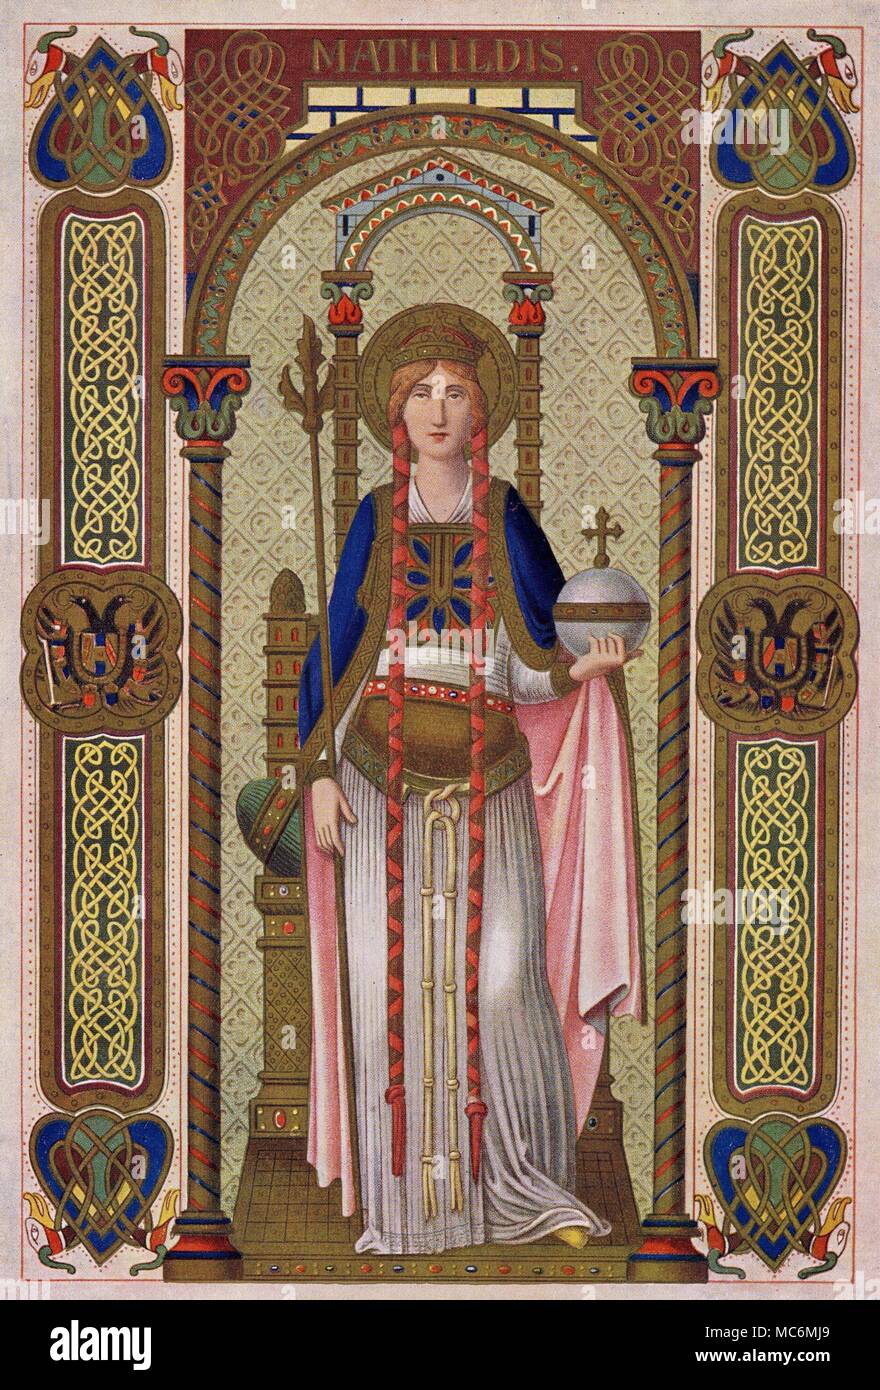 Die Heiligen - MATHILDIS - maud St. Mathildis - oft in Englisch genannt, Saint Maud - war ein 10. Jahrhundert deutsche Königin, die gut in das Kloster in Erford erzogen worden war. Während ihrer Ehe für ihre Frömmigkeit bekannt, nach dem Tod ihres Mannes, sie verzichtete auf die Welt, und widmete sich zu guten Werken und spiritueller Kontemplation. Dieses drucken verkündet ihre königliche Status in der doppelköpfige Adler gerät, und in ihrer Symbole der Macht - die dreifach Personal und die gekreuzten Orb. Prozess drucken, von Alban Butler das Leben der Väter, der heiligen Märtyrer und andere Grundsätze, Ausgabe von ca. 1928. Stockfoto